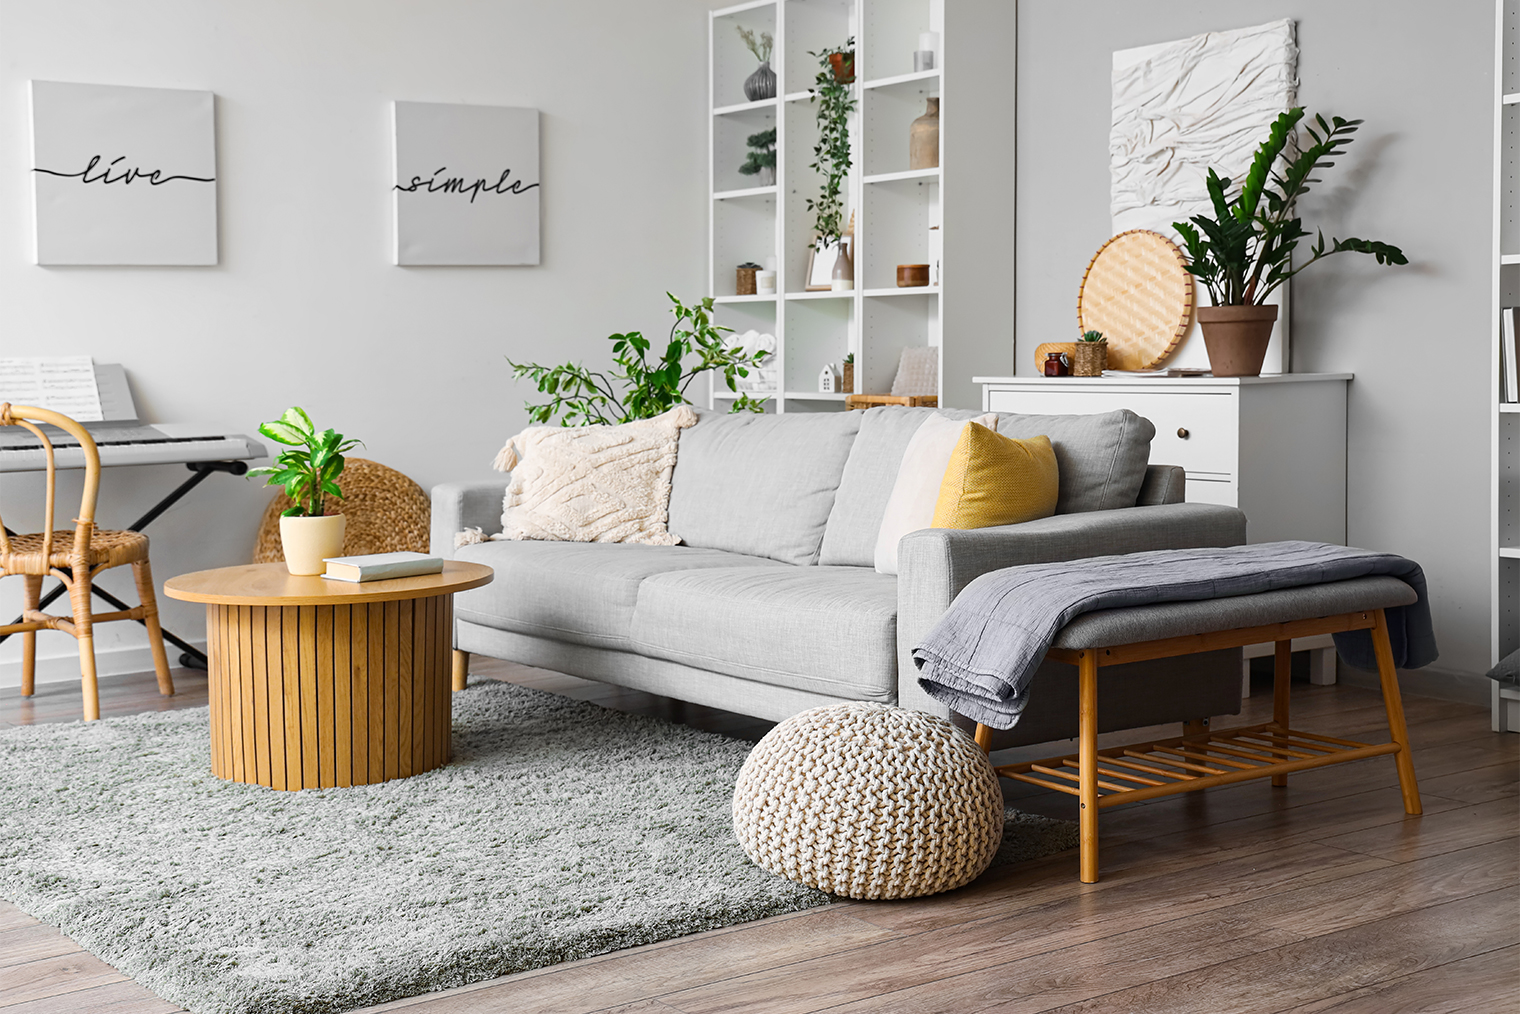 Холодные, светлые, серые оттенки, желтые акценты, простая и функциональная мебель — это скандинавский стиль. Фотография: Pixel-Shot / Shutterstock